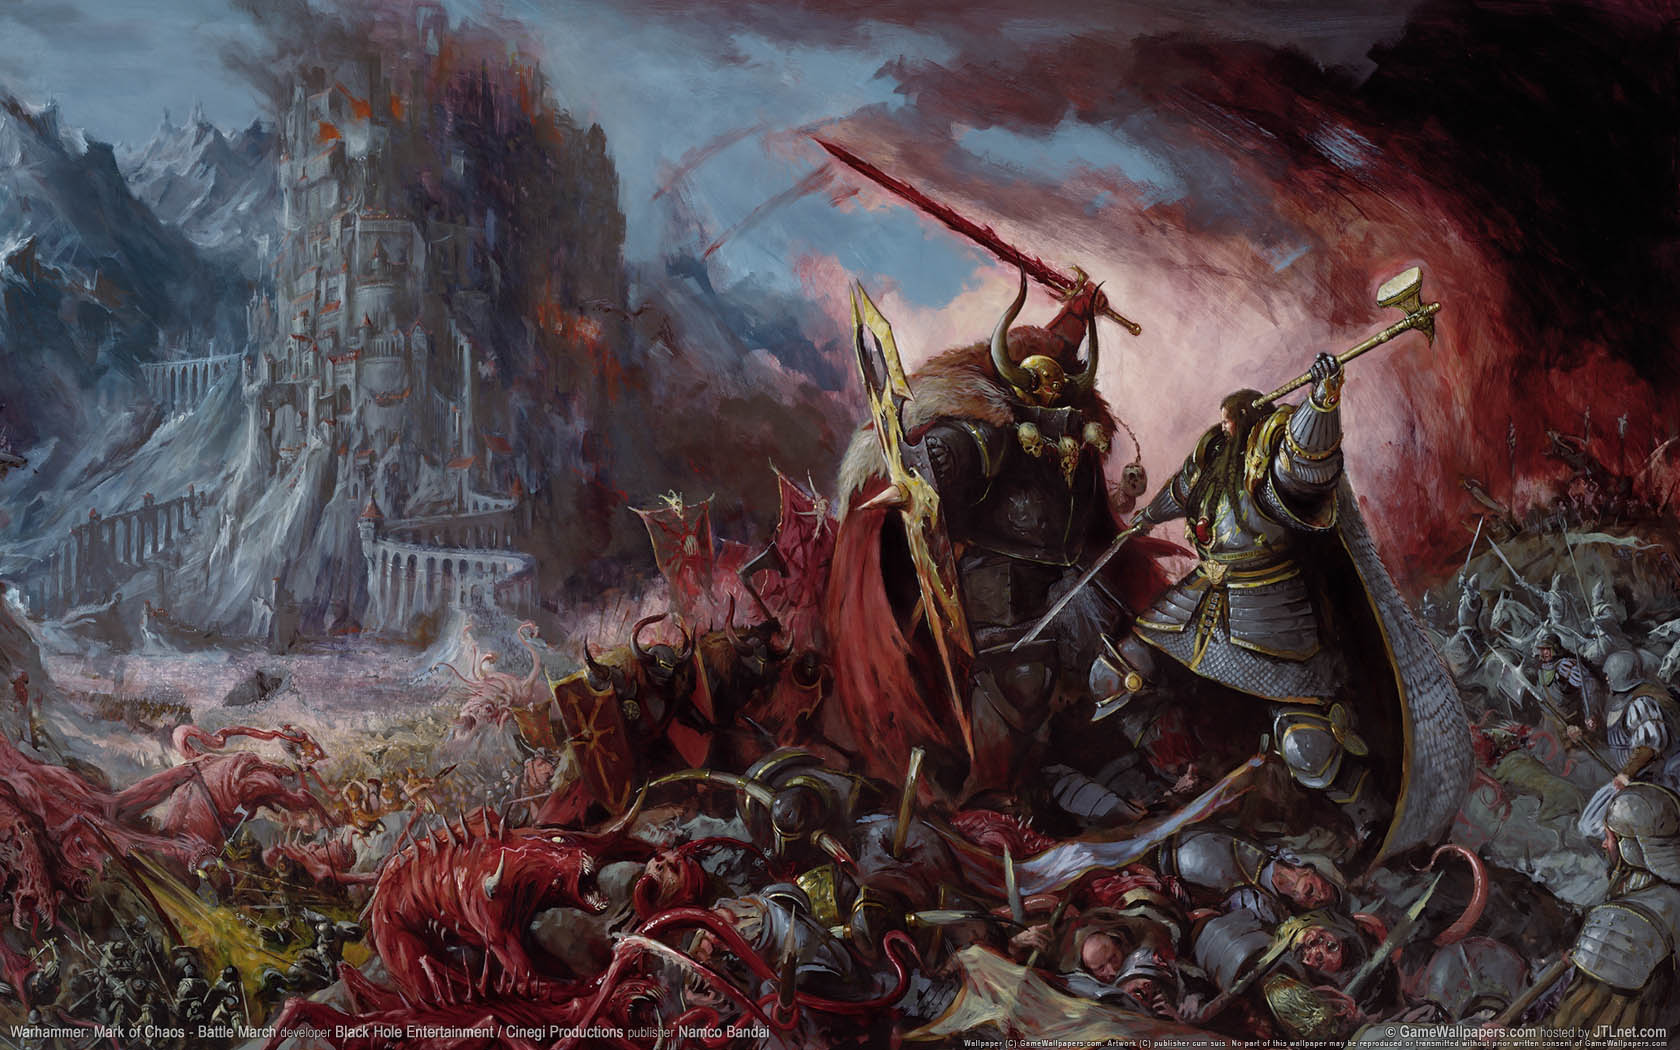 Warhammer: Mark of Chaos - Battle March fond d'cran 02 1680x1050